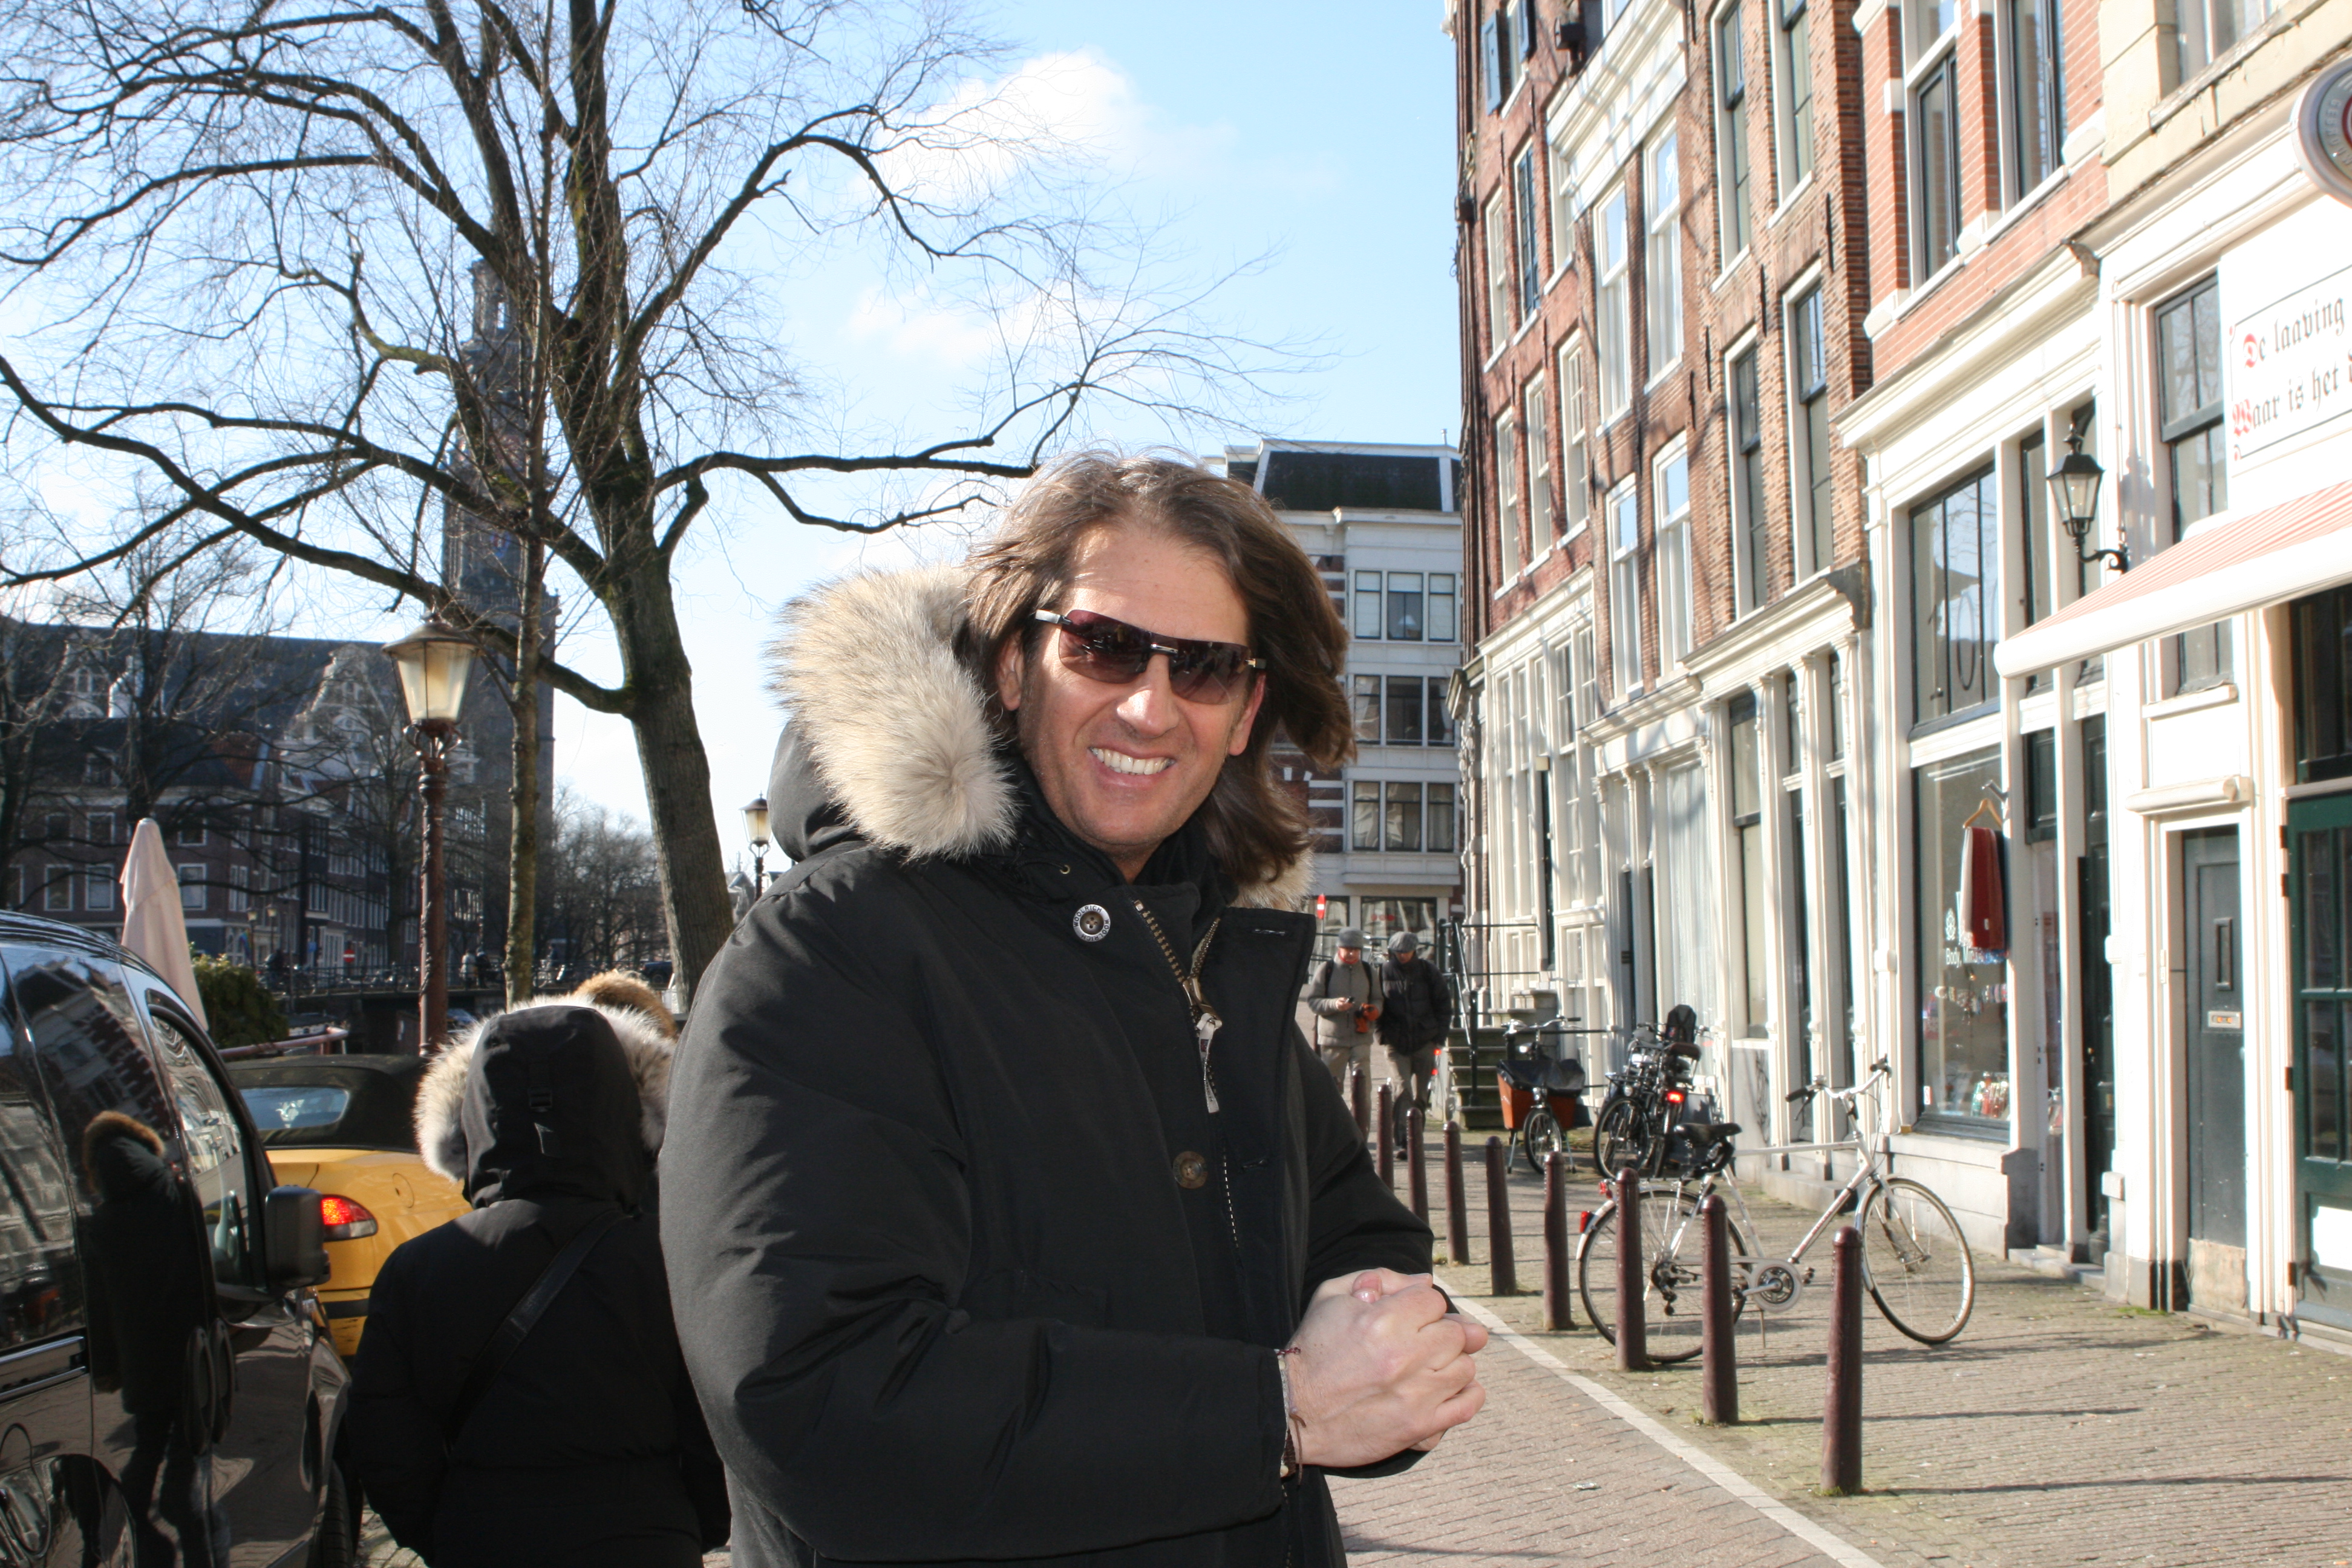 Weekend in Amsterdam